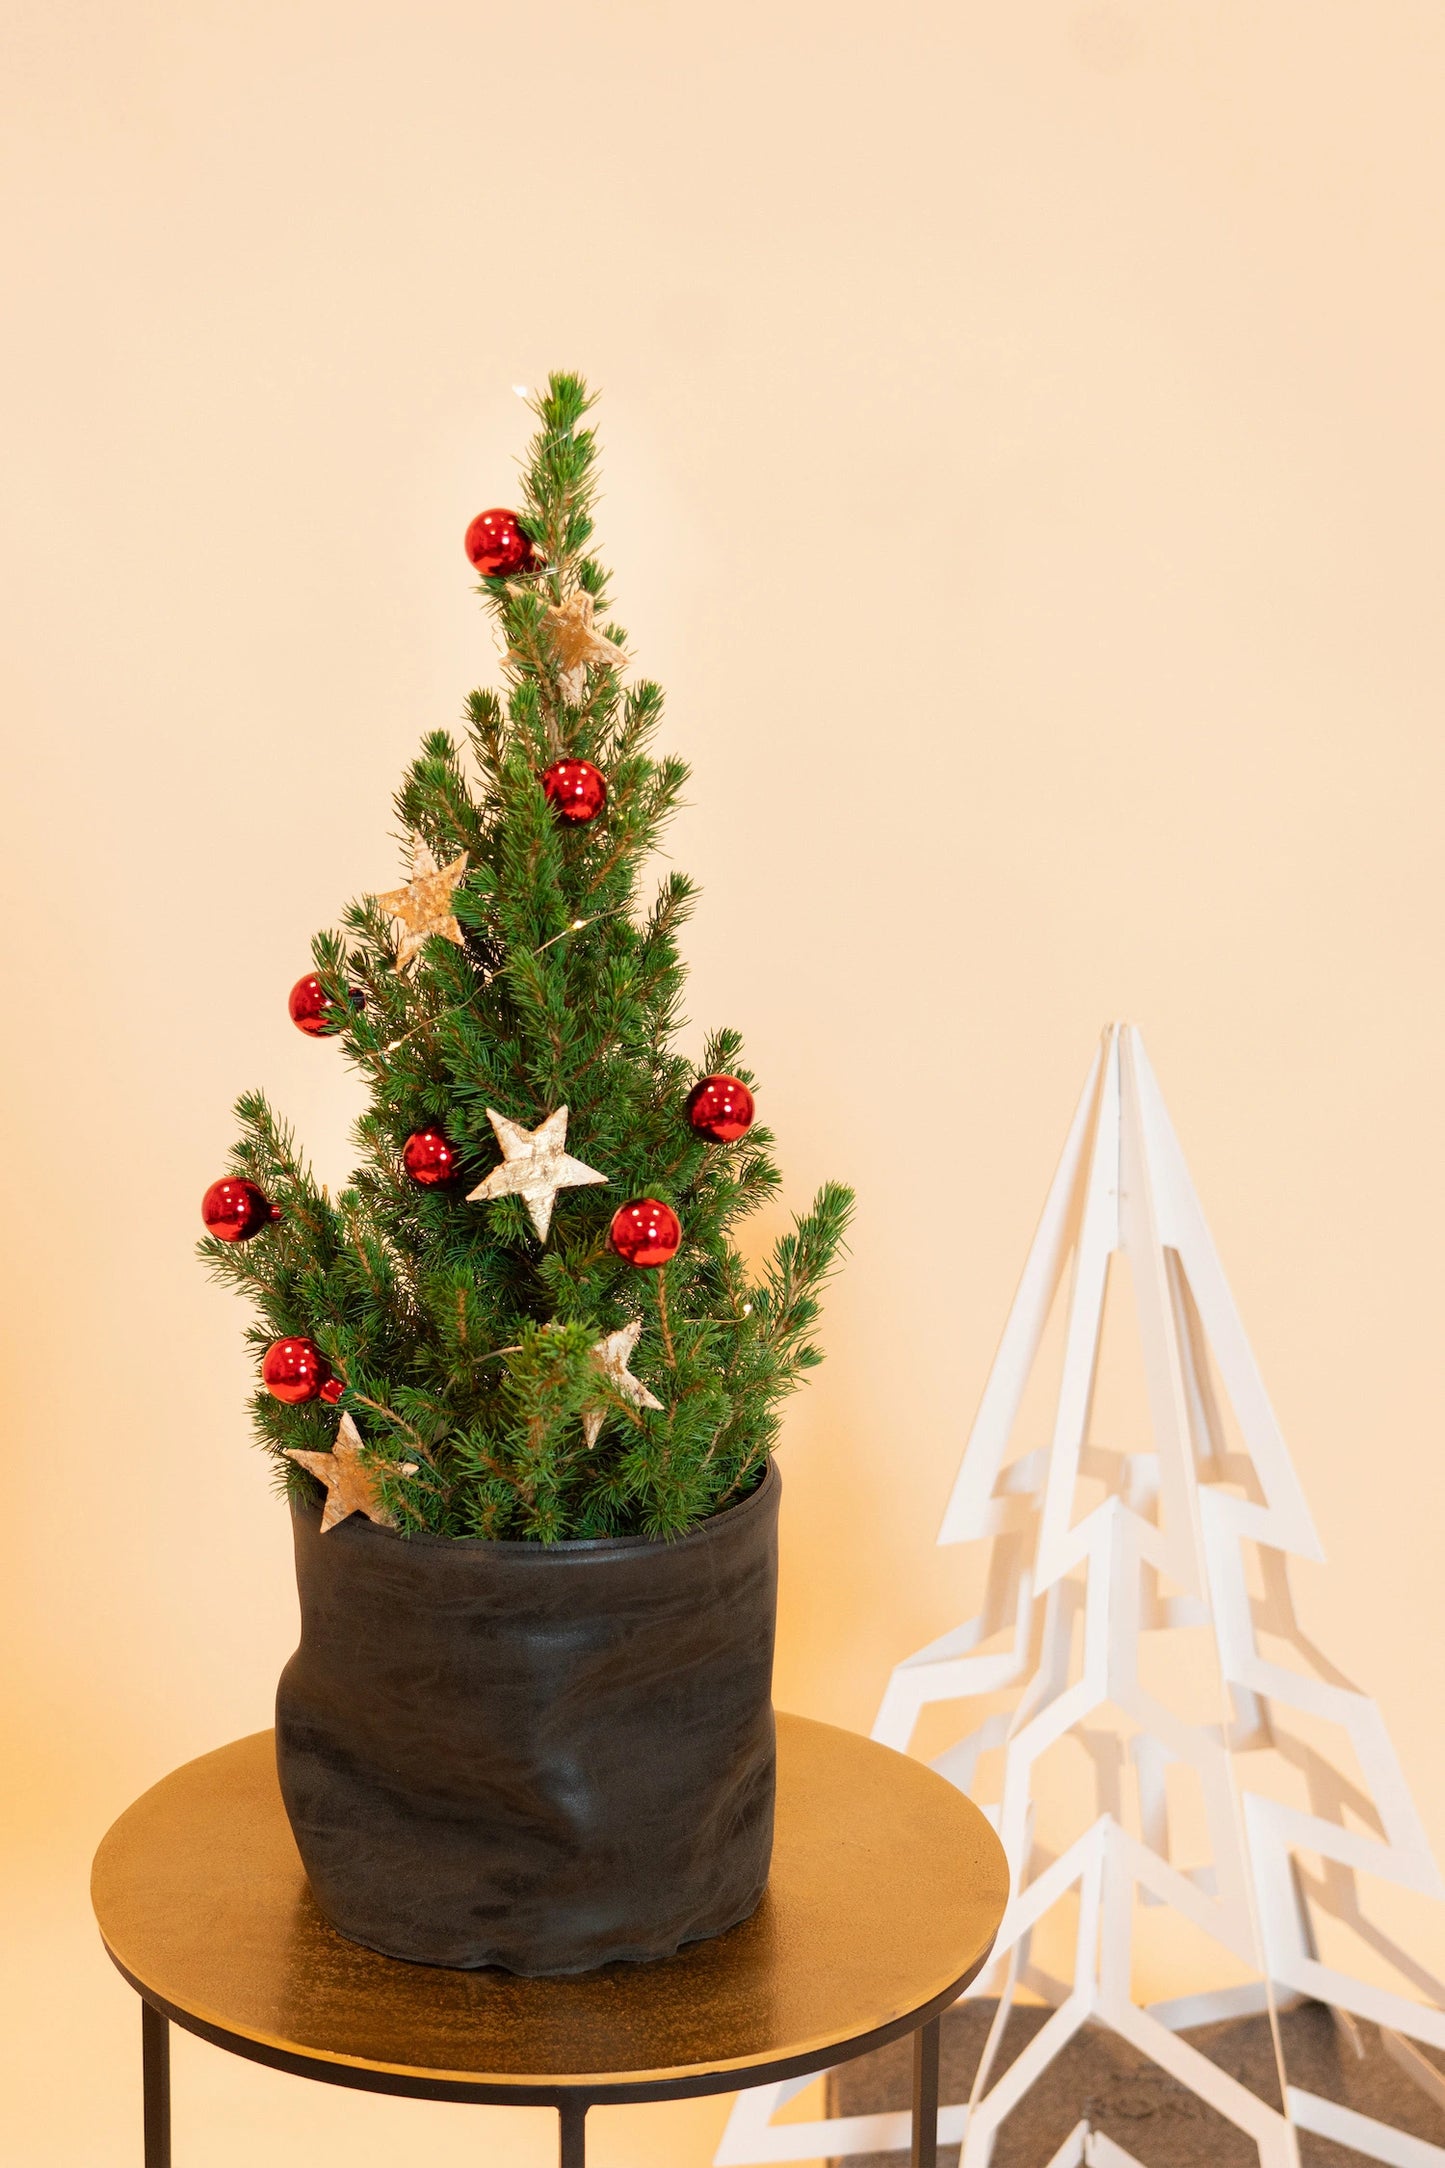 Echt versierd kerstboompje Sfeervol verpakt kerstboompje met glinsterende ornamenten en feestelijke linten, klaar om de magie van Kerstmis in huis te brengen